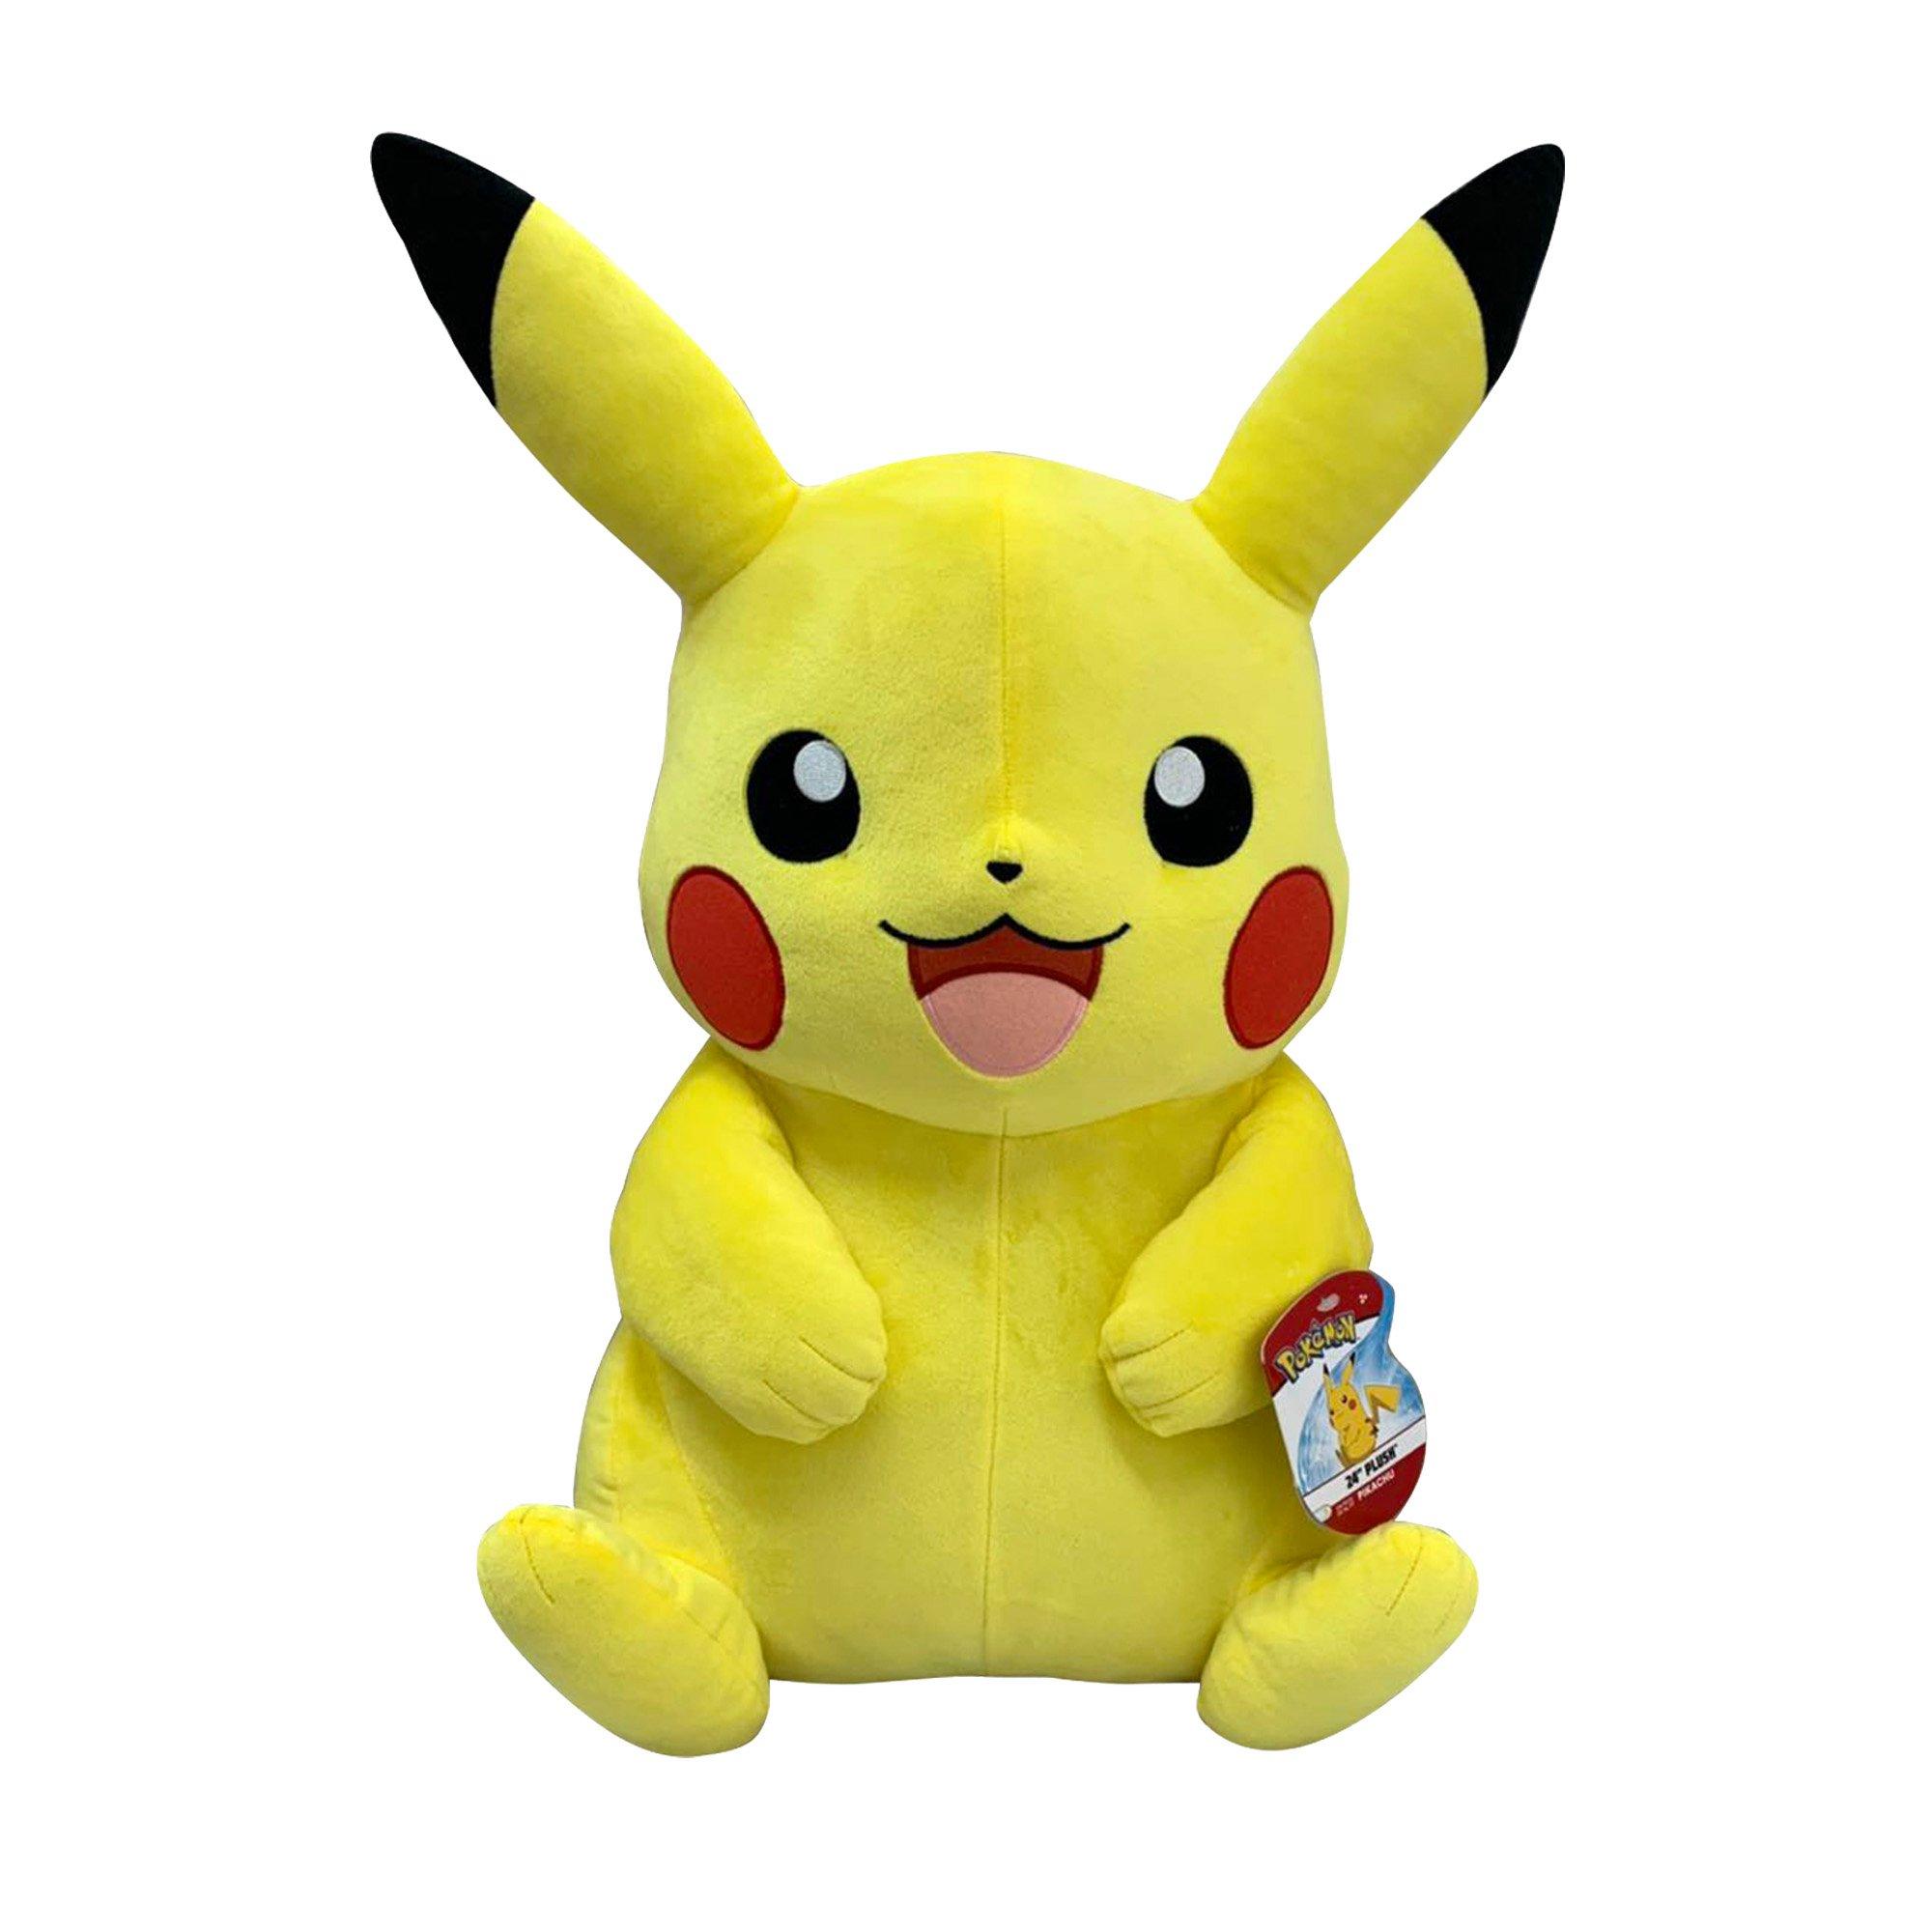 where can i buy pokemon plush toys